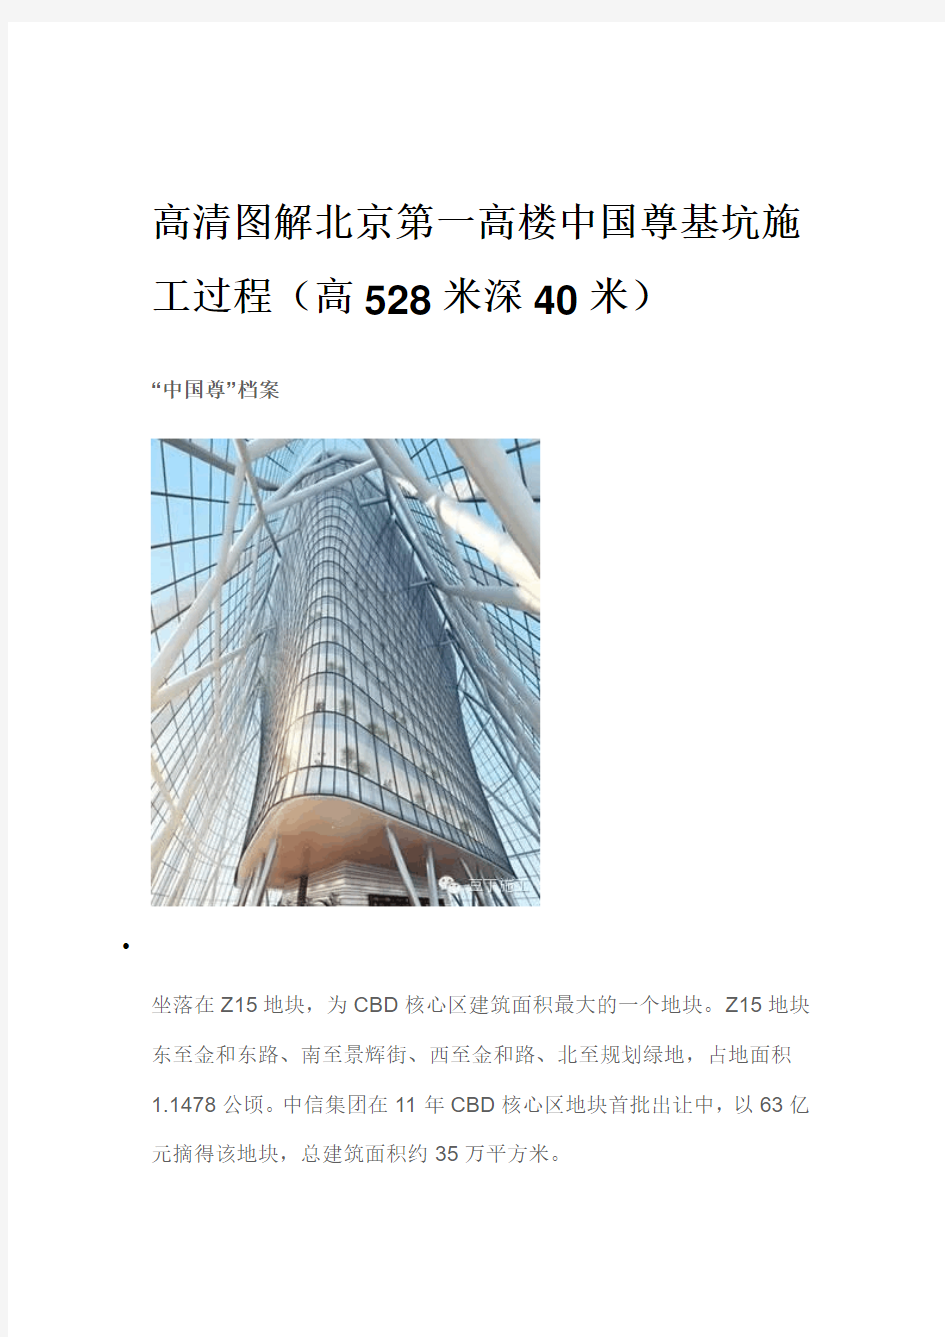 高清图解北京第一高楼中国尊基坑施工过程(高528米深40米).